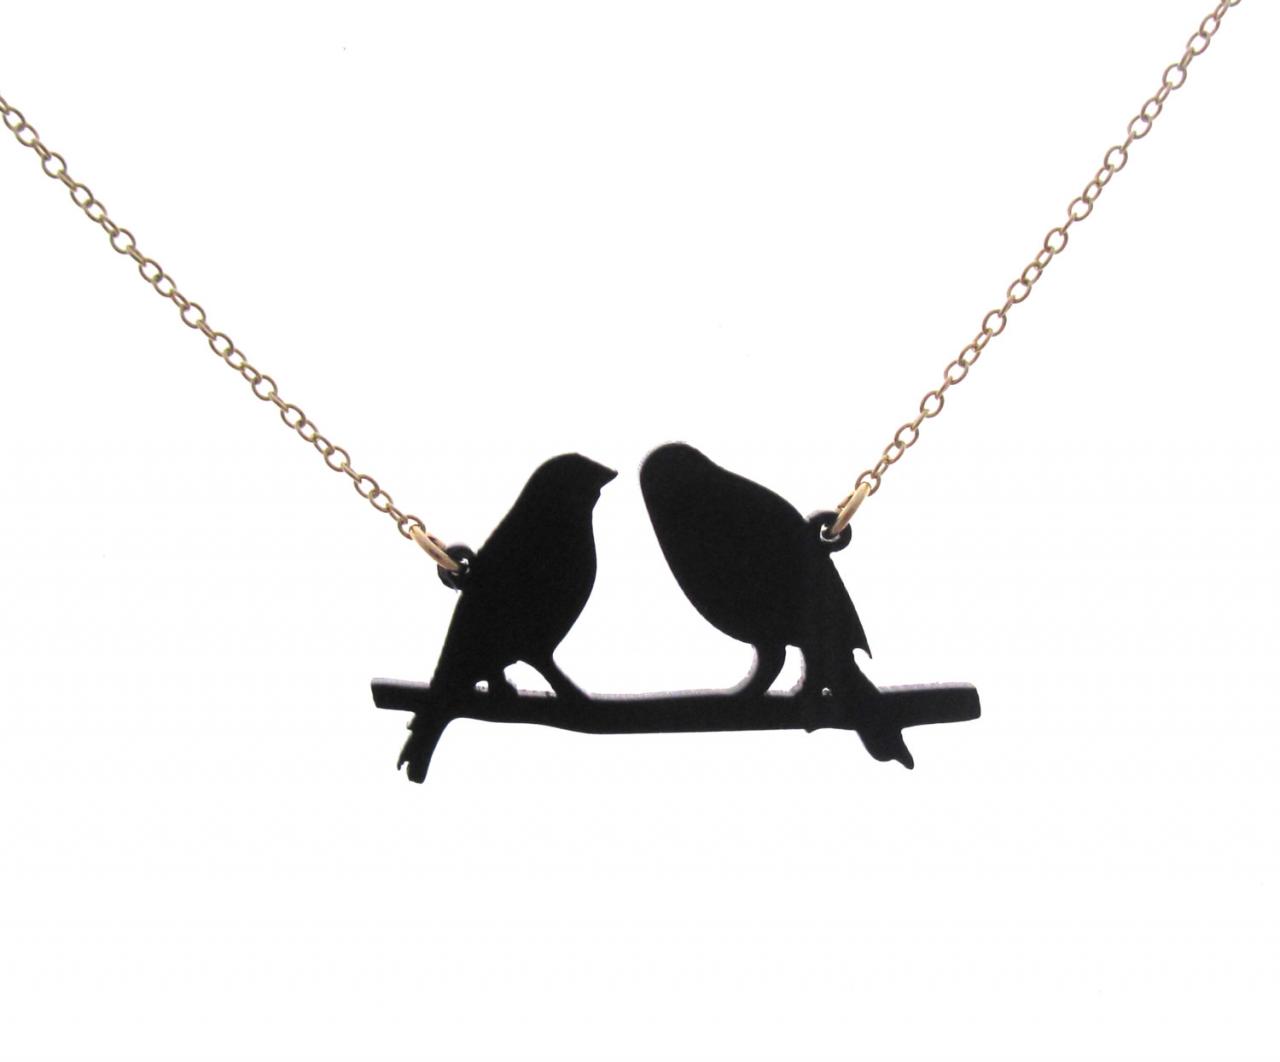 Birds On A Wire Necklace - Bird Jewelry - Bird Necklace - Love Birds Necklace - Couple Birds - Bird And Branch Jewelry - Lovebird Necklac